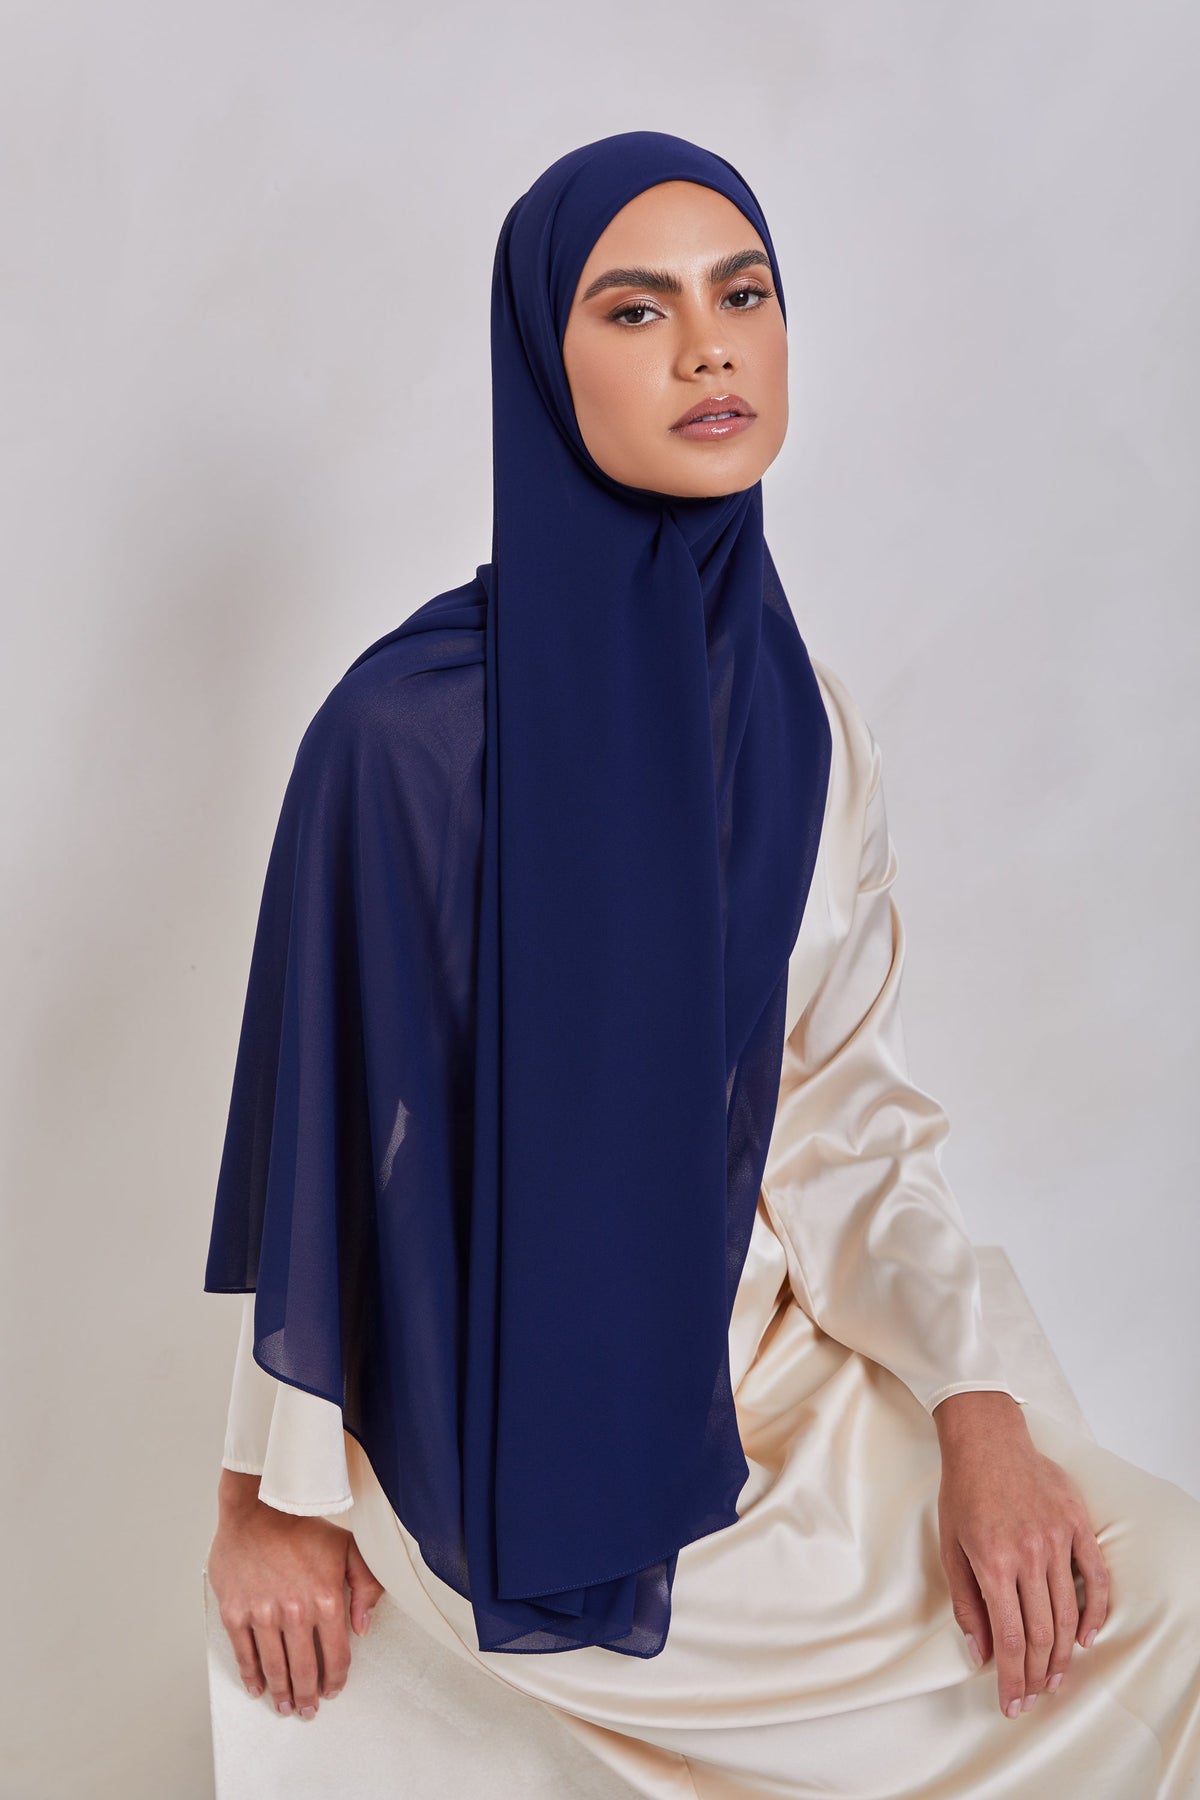 Essential Chiffon Hijab - Midnight Blue Scarves & Shawls epschoolboard 